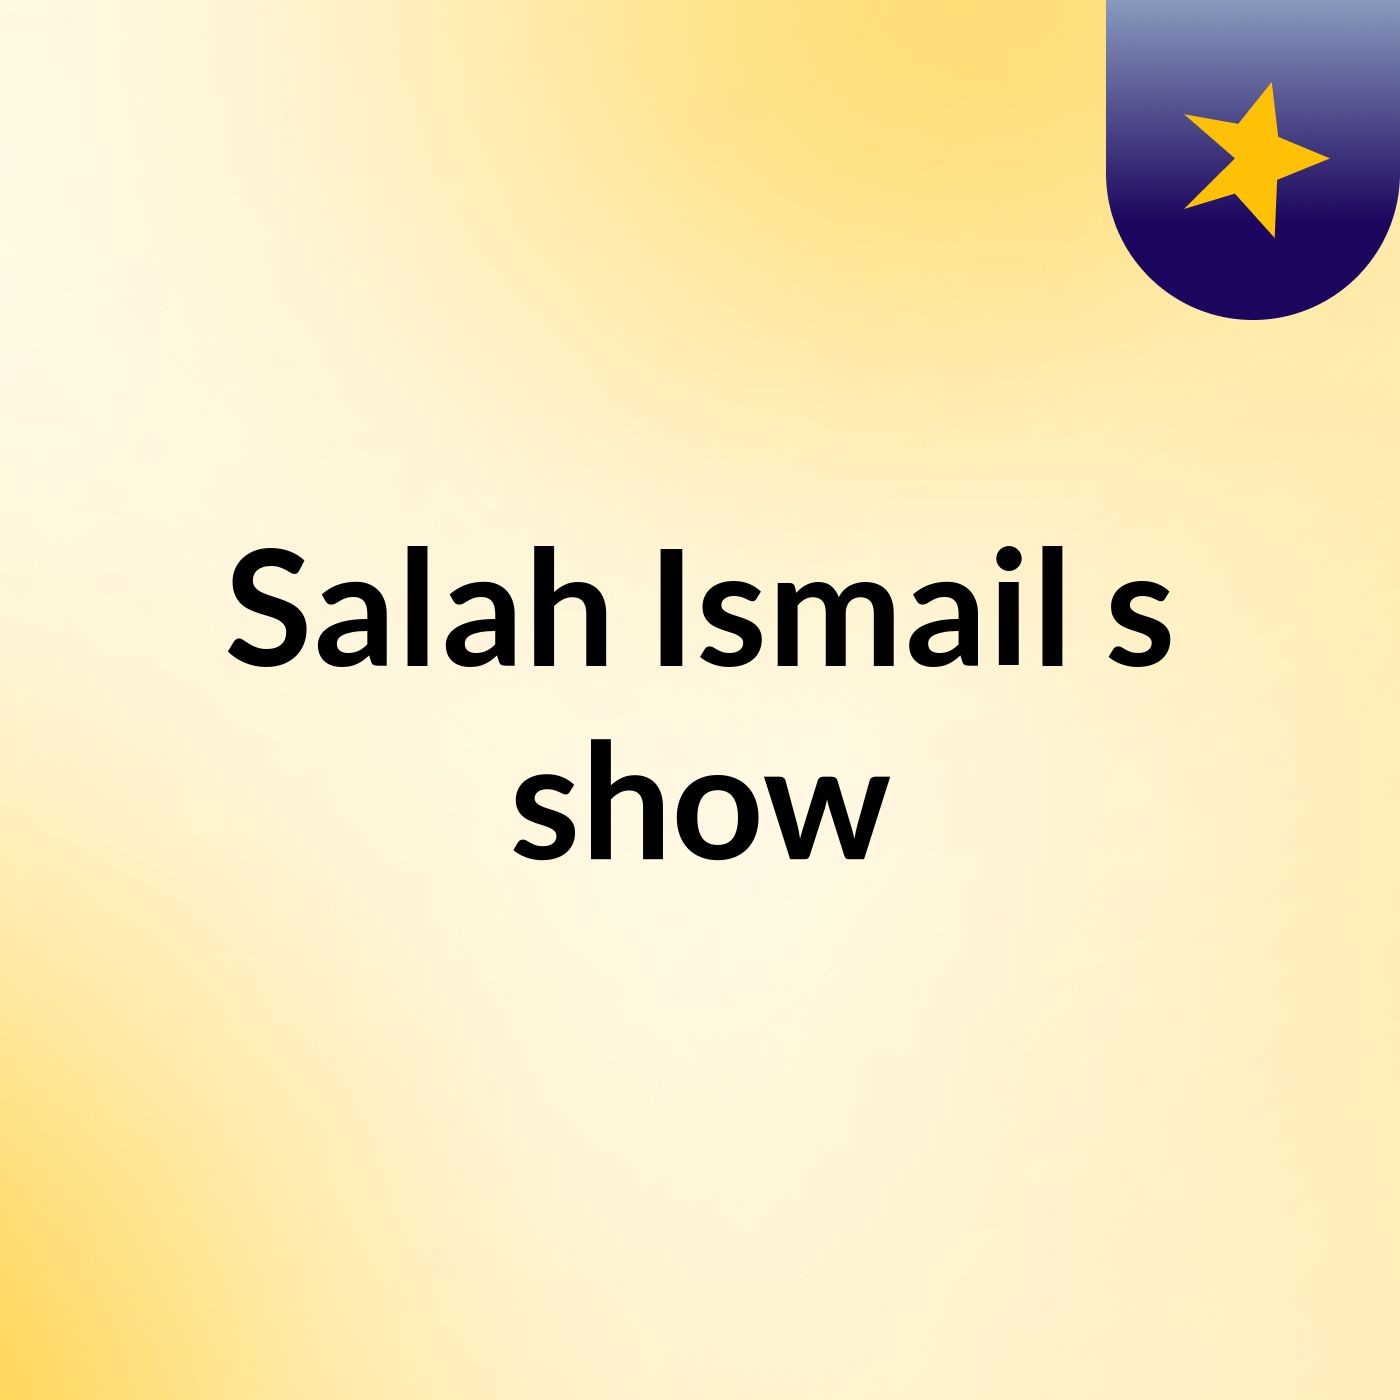 Salah Ismail's show